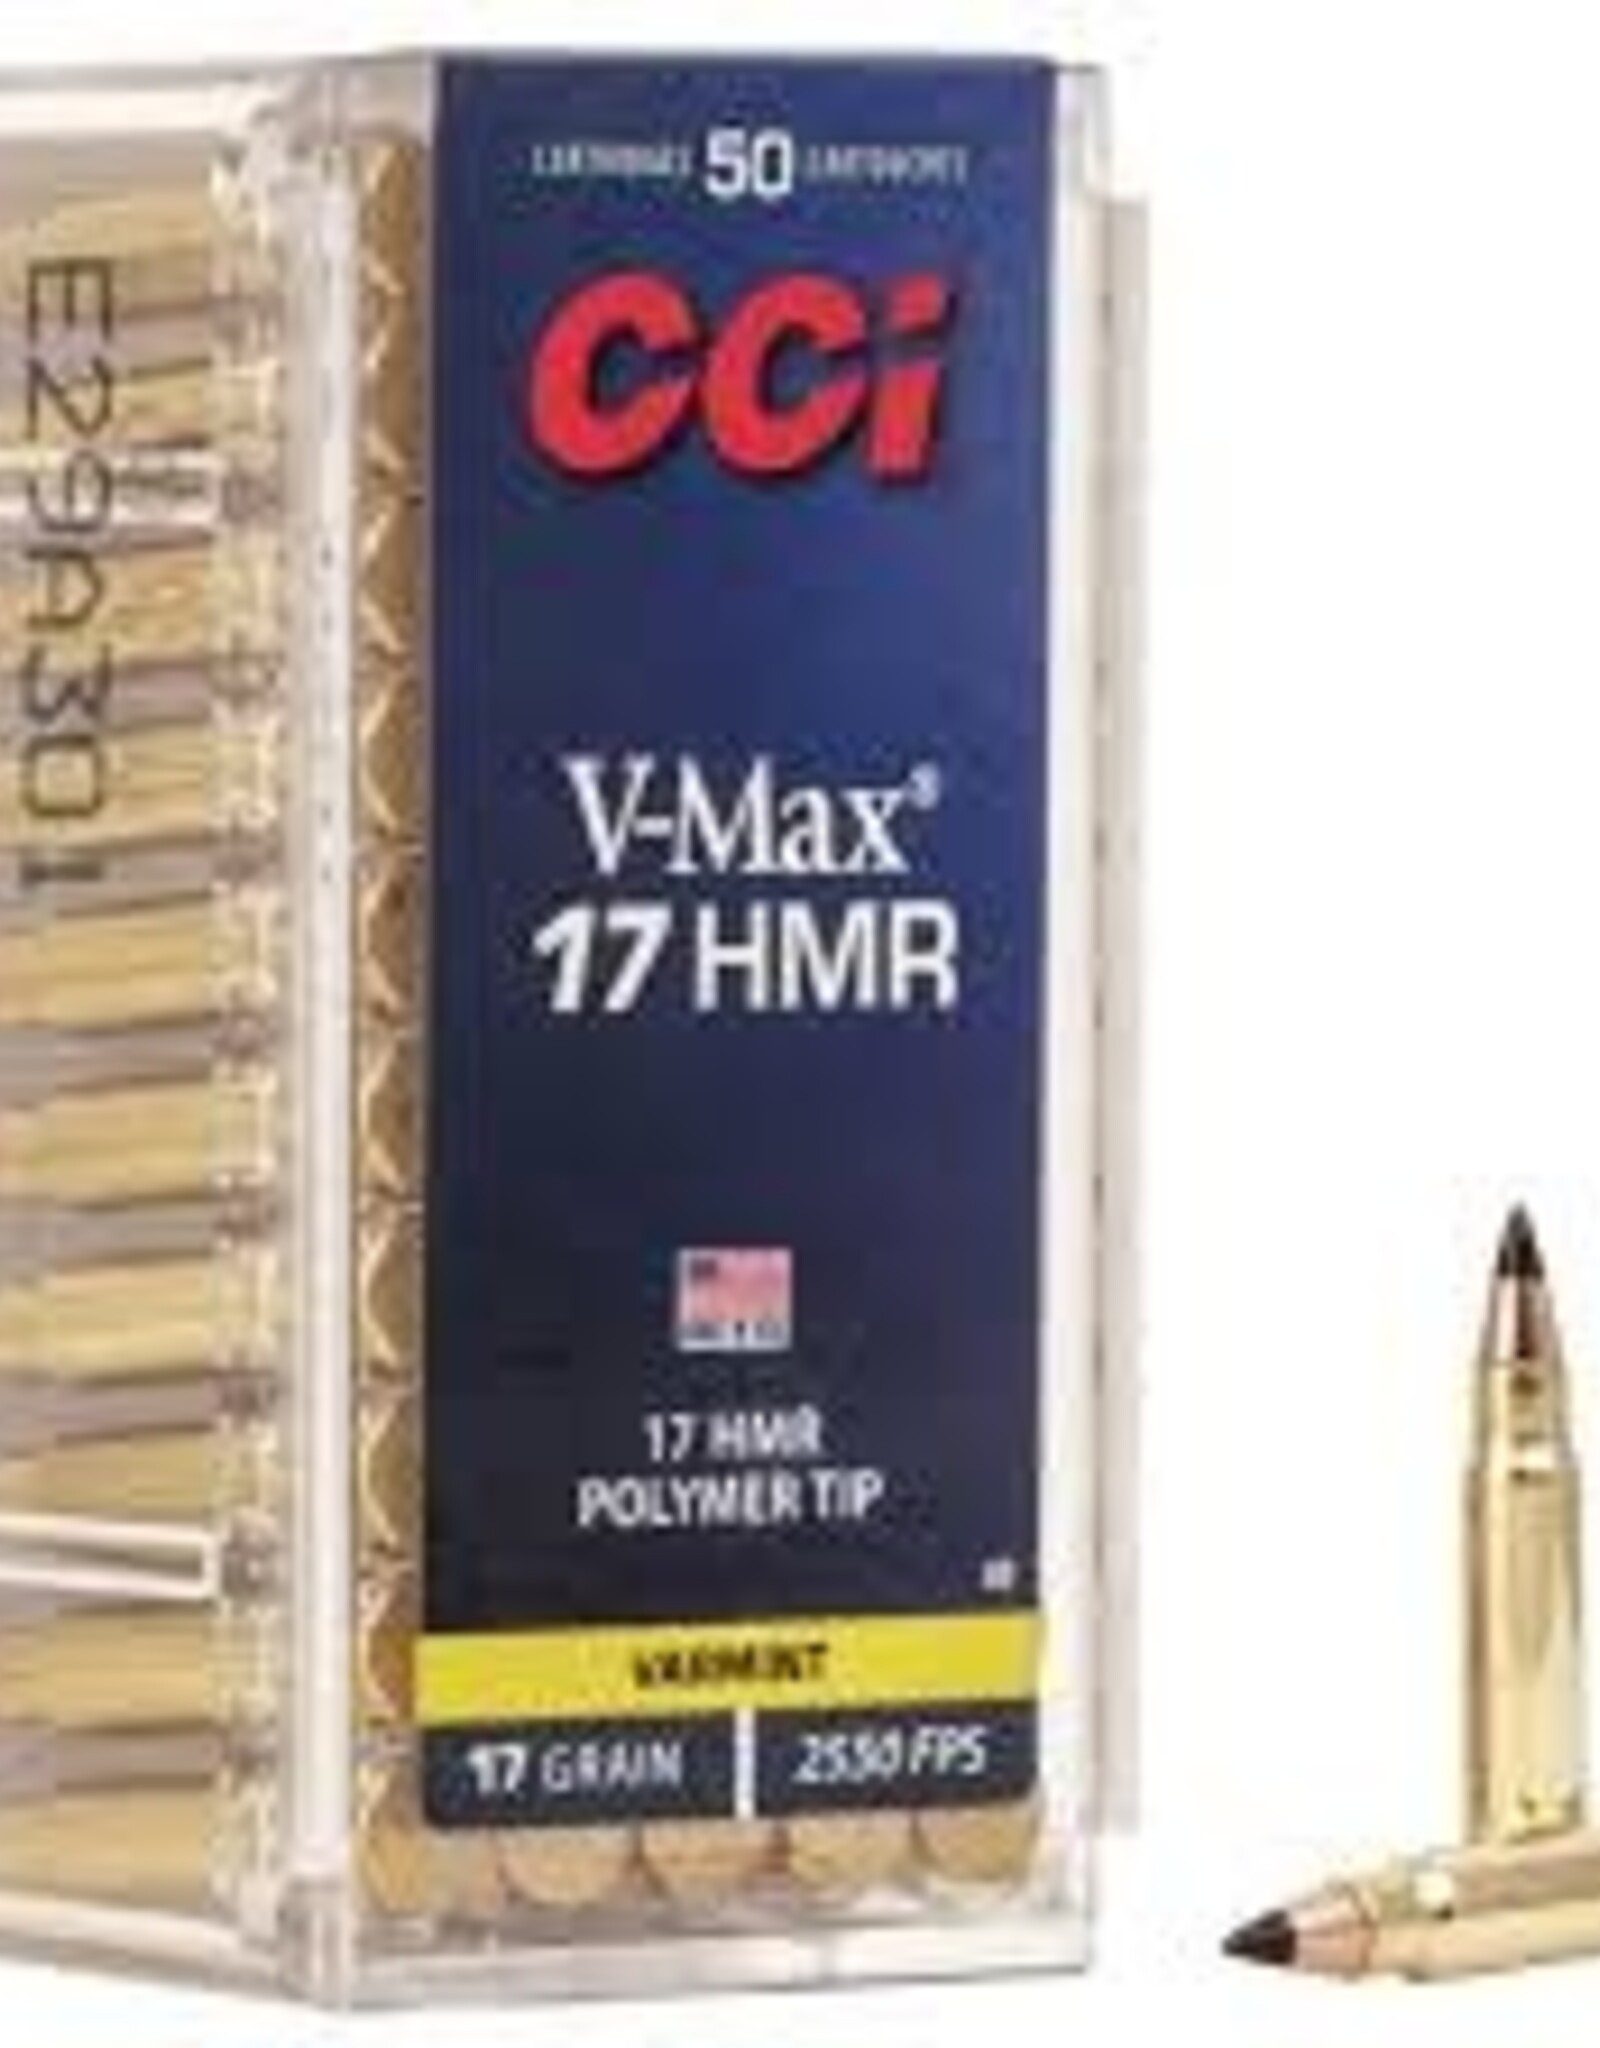 CCI V-MAX 17 HMR 17 GR POLYMER TIP